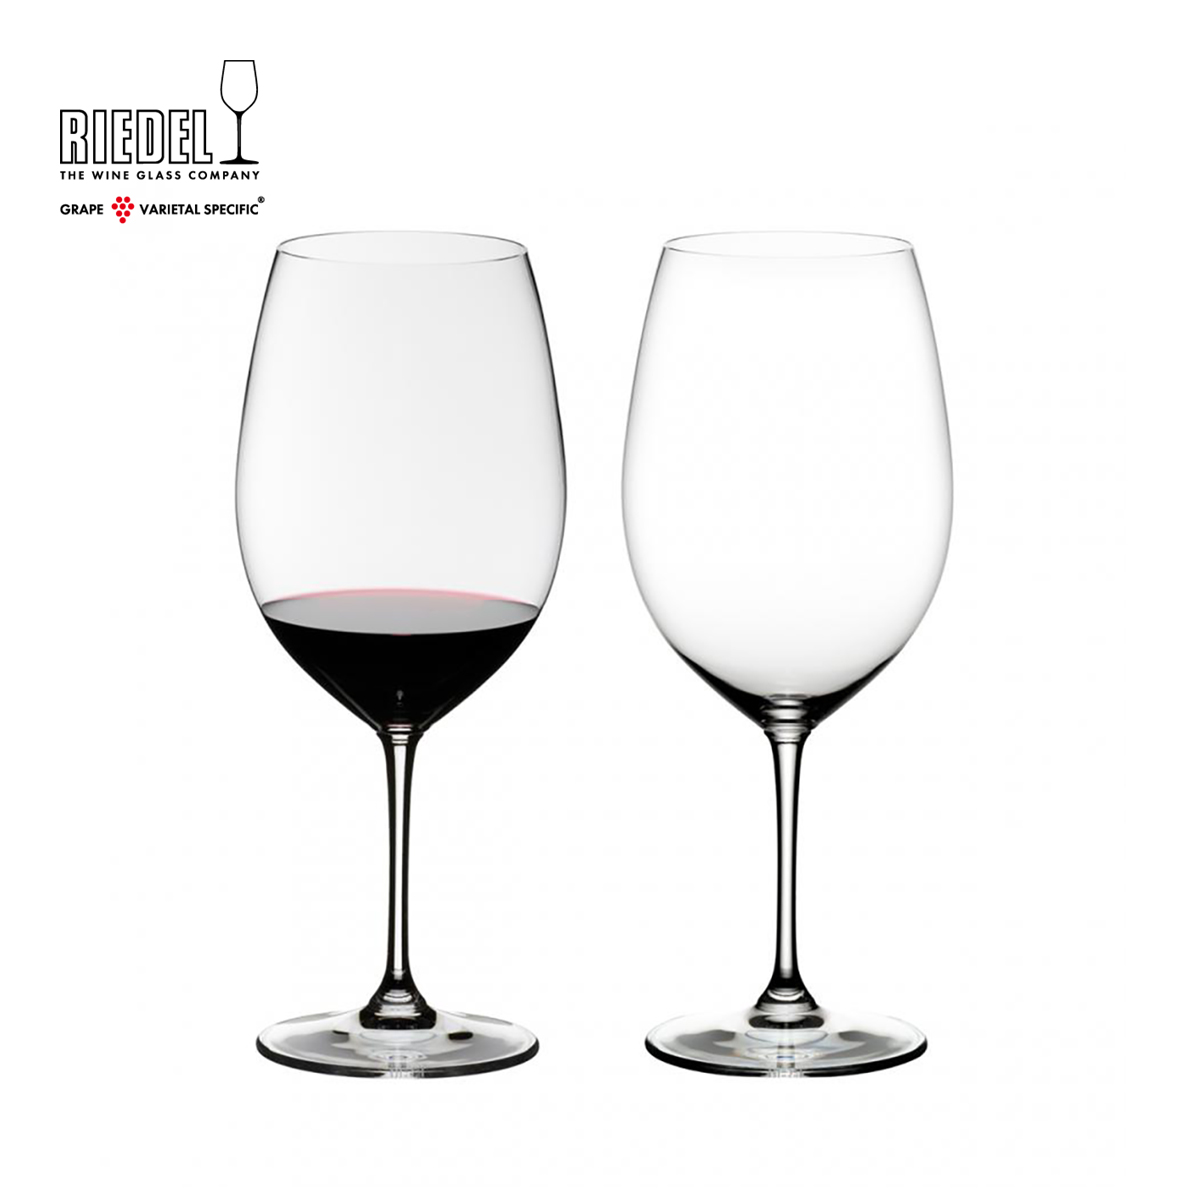 フルボディで 渋みがあり濃厚な赤ワインに 在庫限り リーデル公式 ヴィノム カベルネ ソーヴィニヨン メルロ ボルドー RIEDEL 赤ワイングラス 市販 TESB ラッピング無料 2個入 0 6416